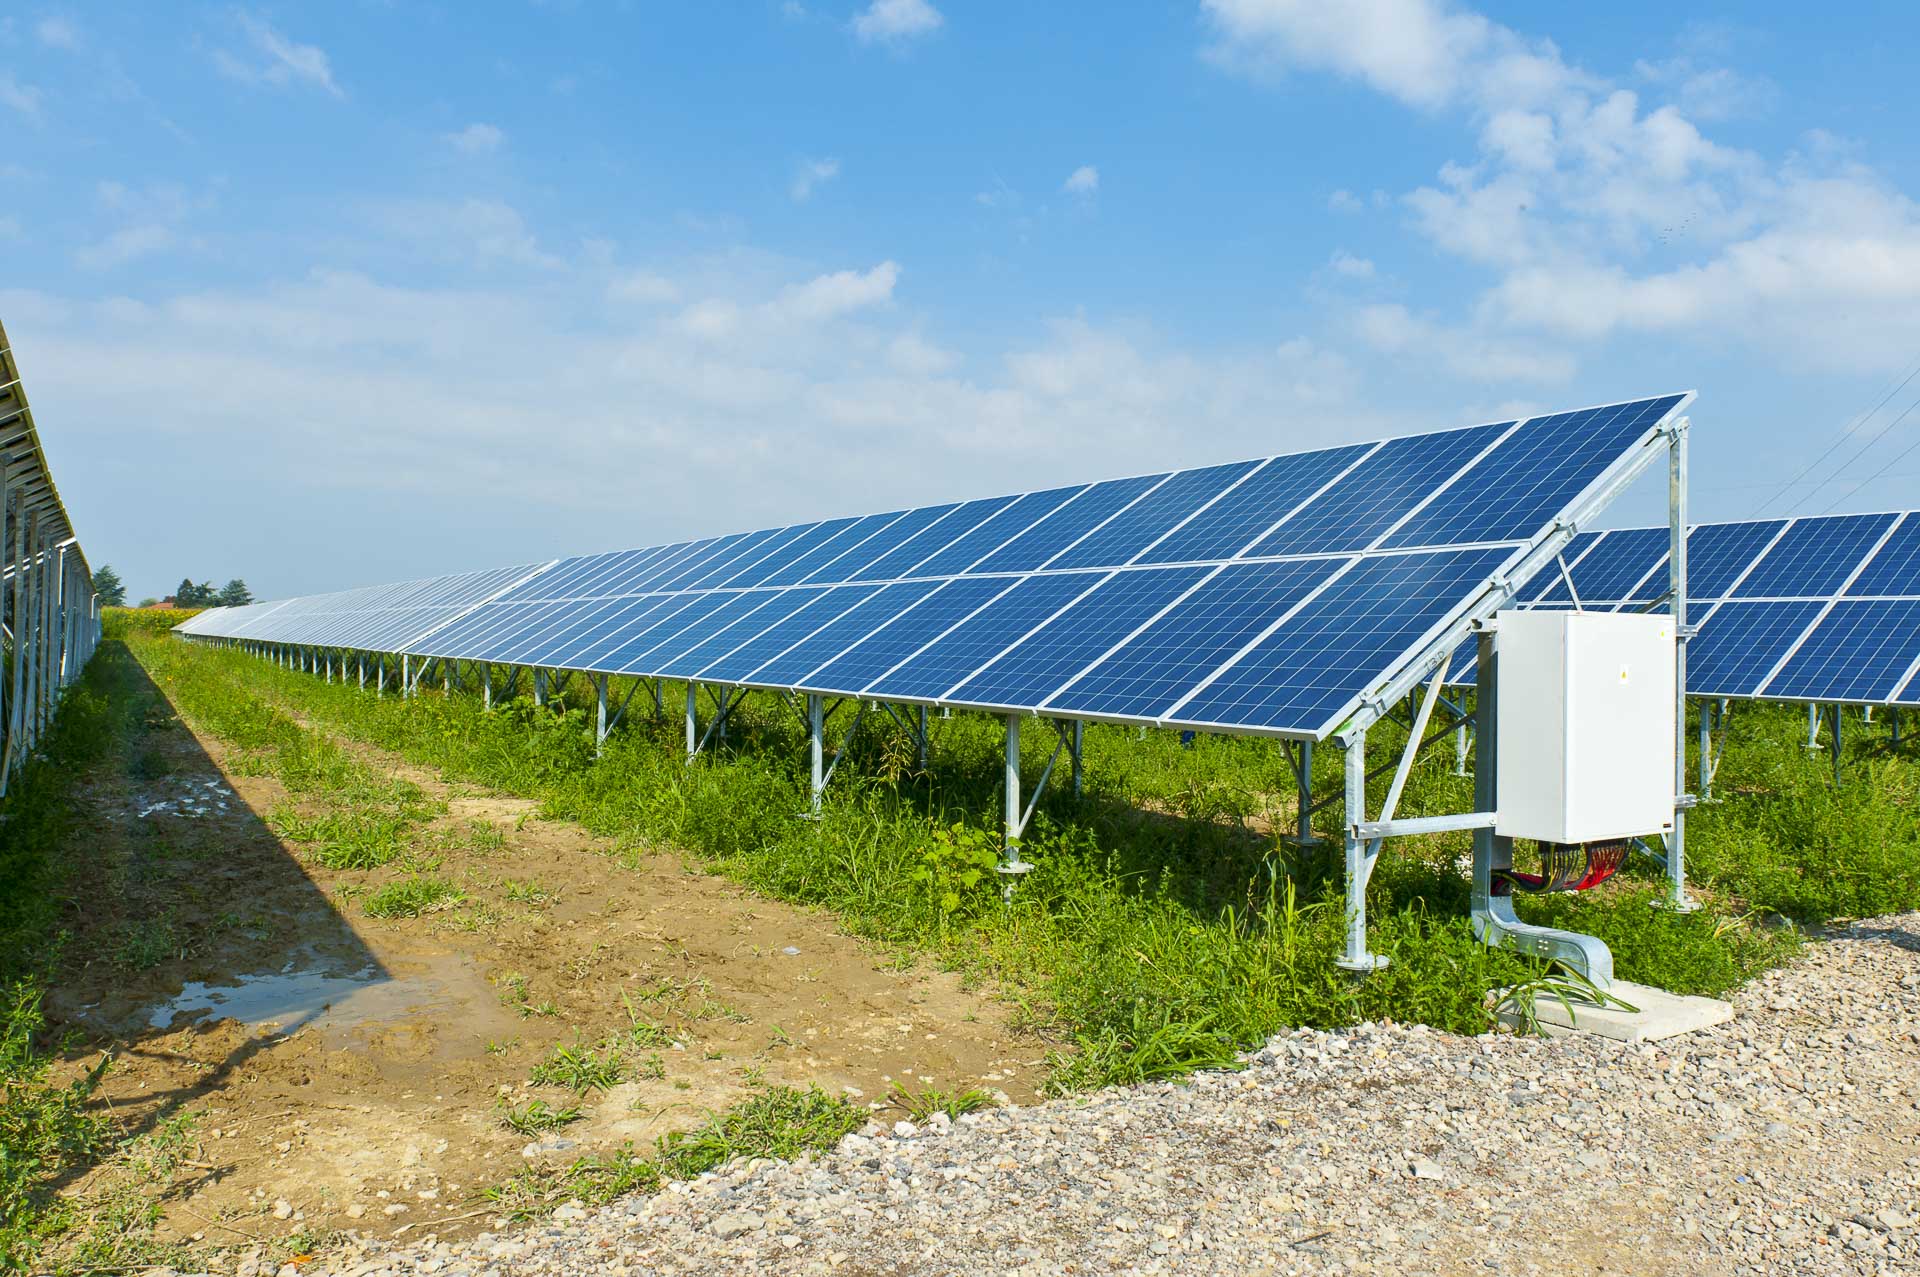 Impianto produzione energia solare fotovoltaica rinnovabile sostenibile CVA Alessandria sud